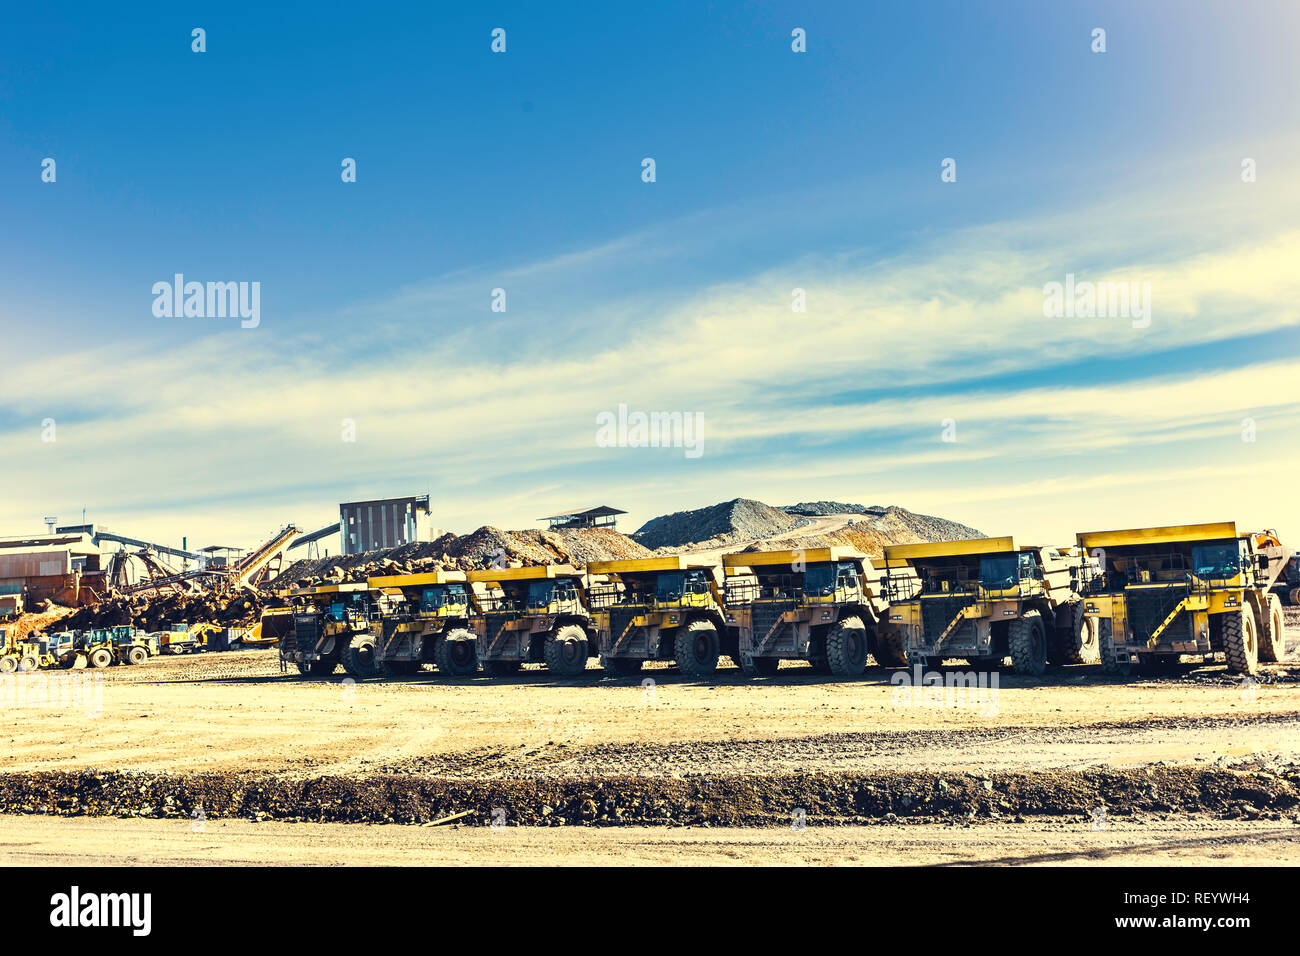 Les grands camions à benne jaune sont mis en ligne dans la mine avec l'ancien mining construction avec le ciel bleu avec des nuages en arrière-plan Banque D'Images